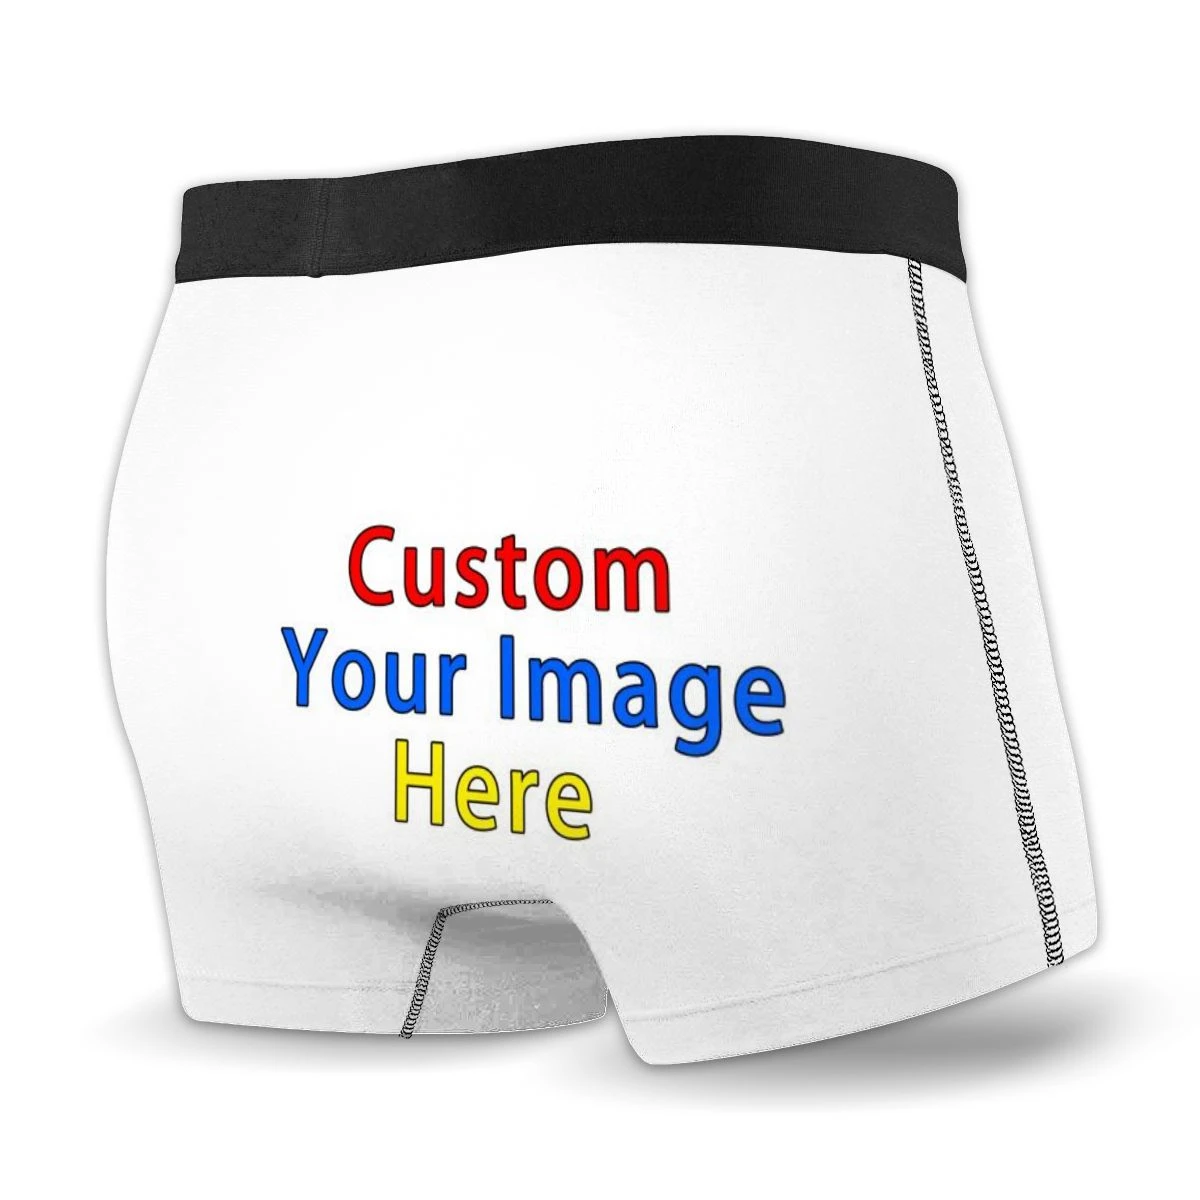 Custom Mens Fashion Brief Underwear Design Mens Underwear 